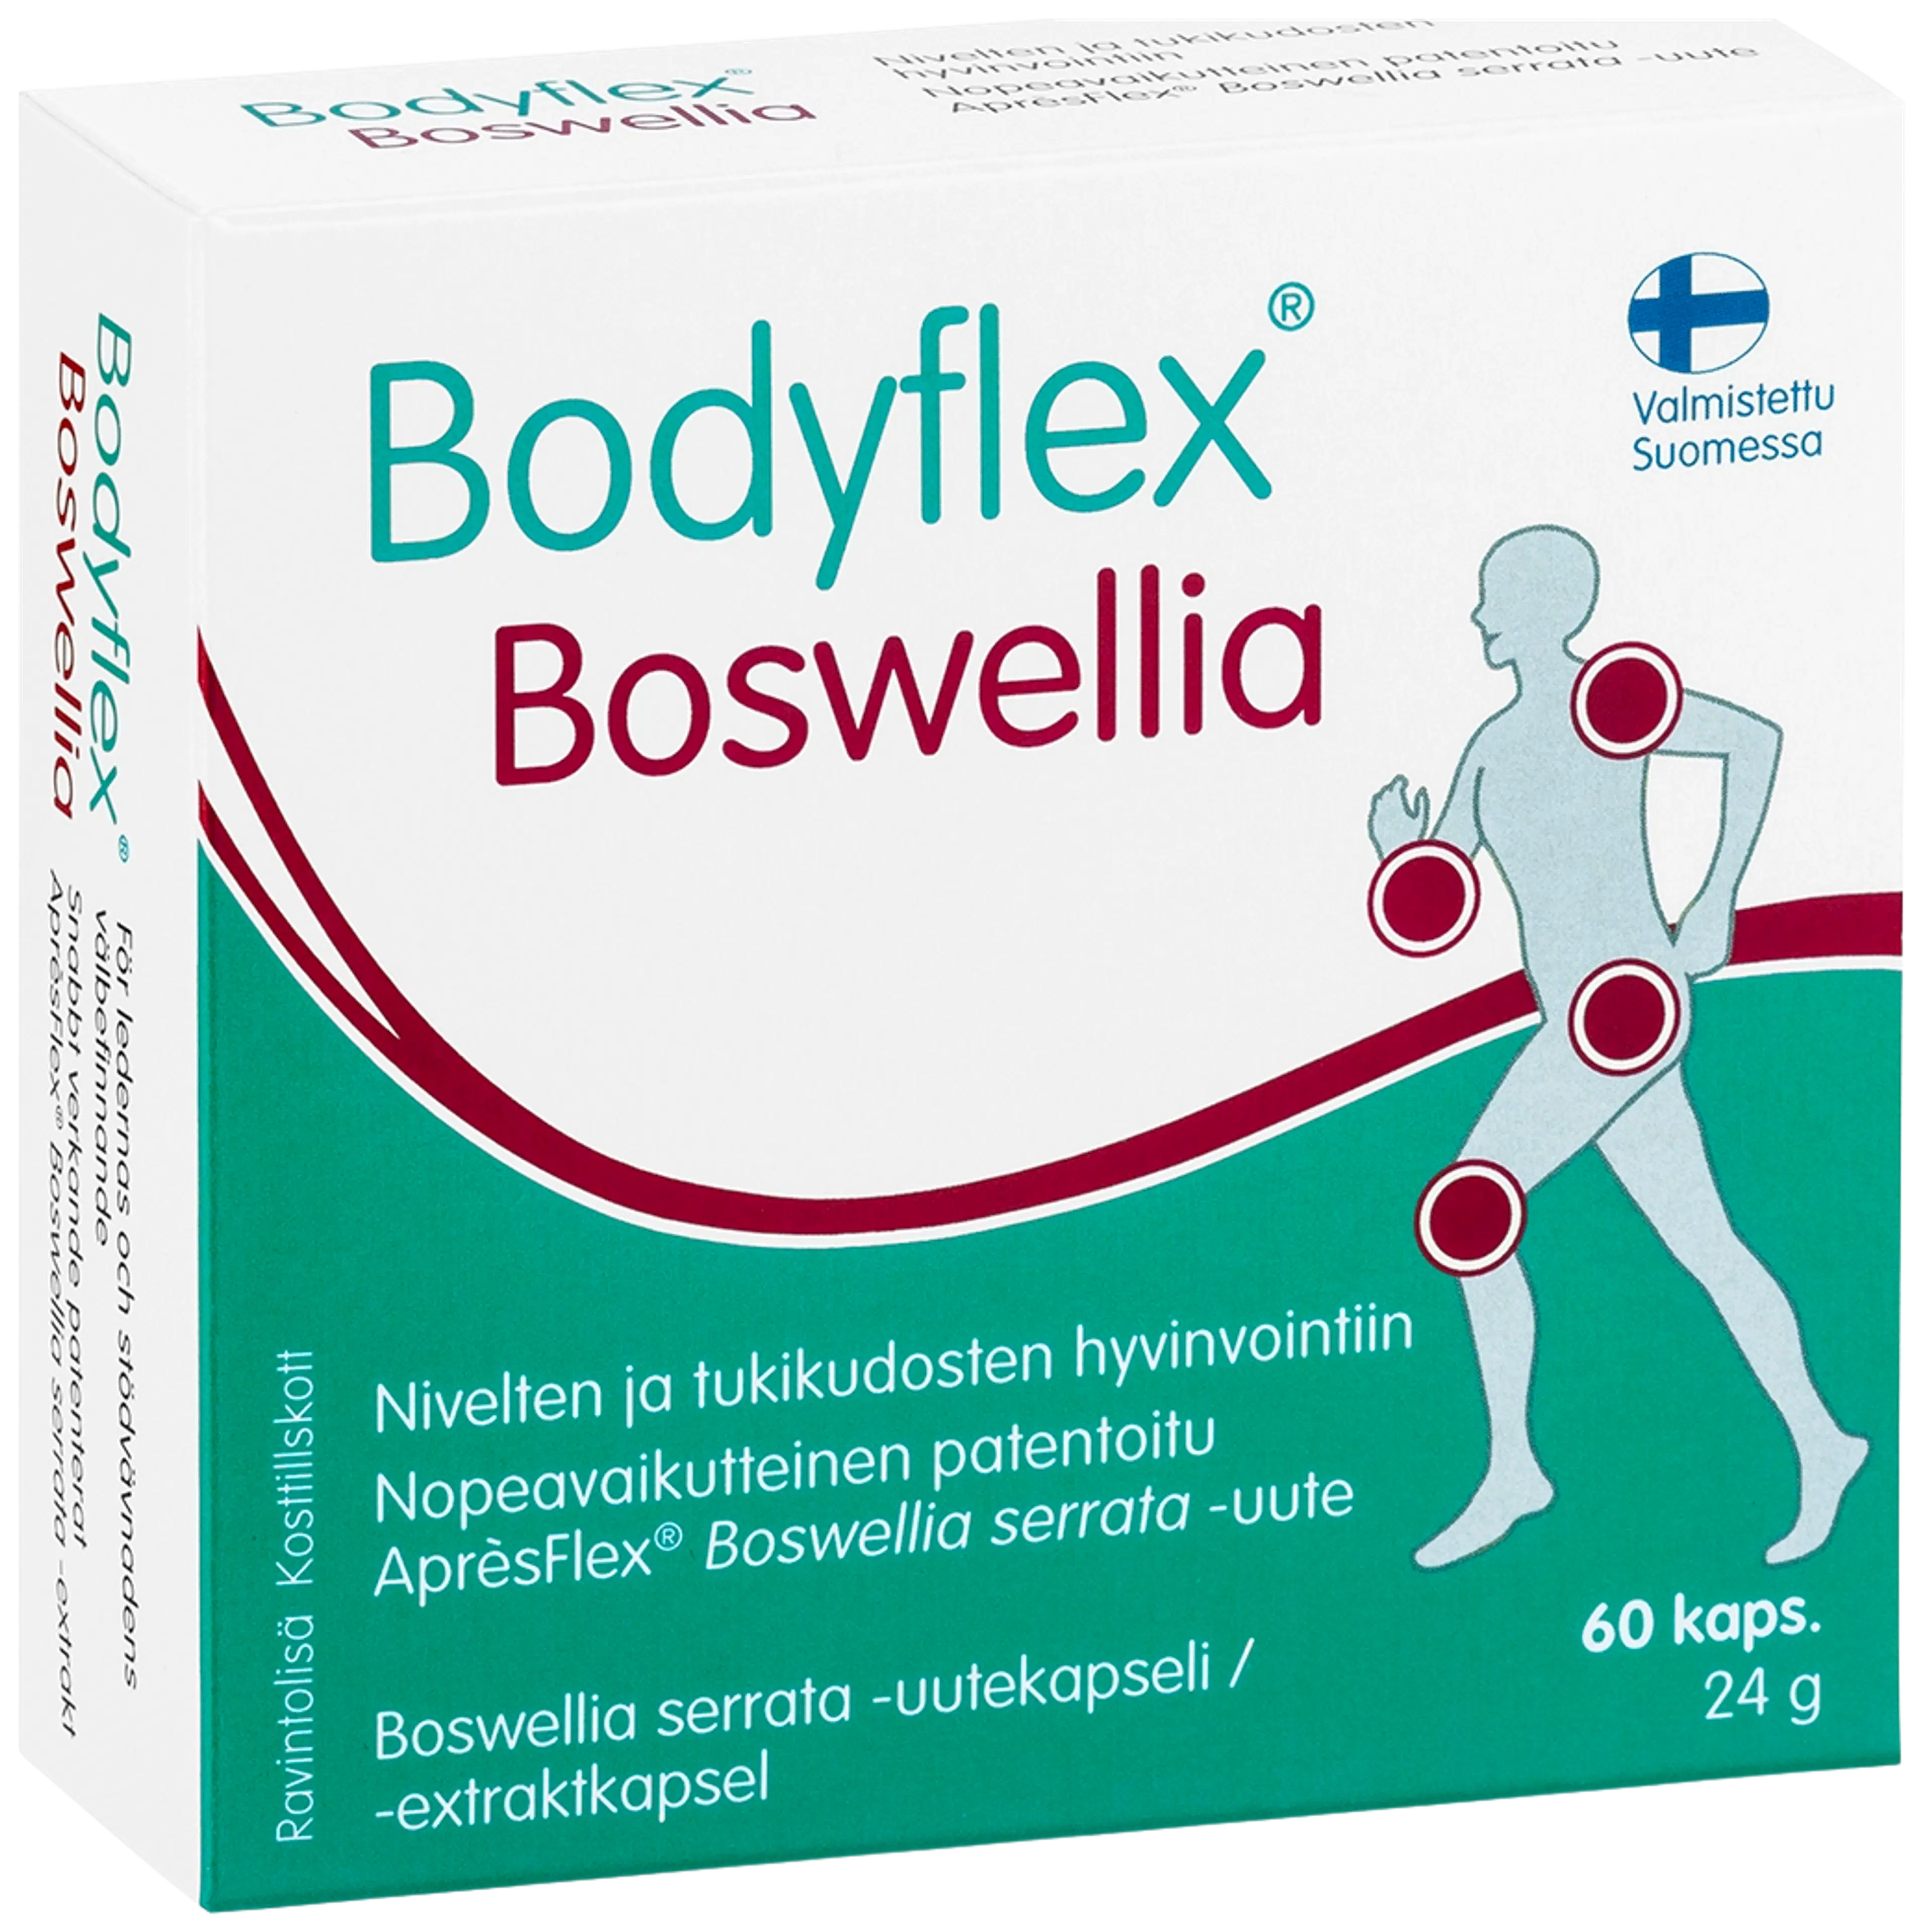 Bodyflex Boswellia Boswellia serrata -uutekapseli 60 kaps